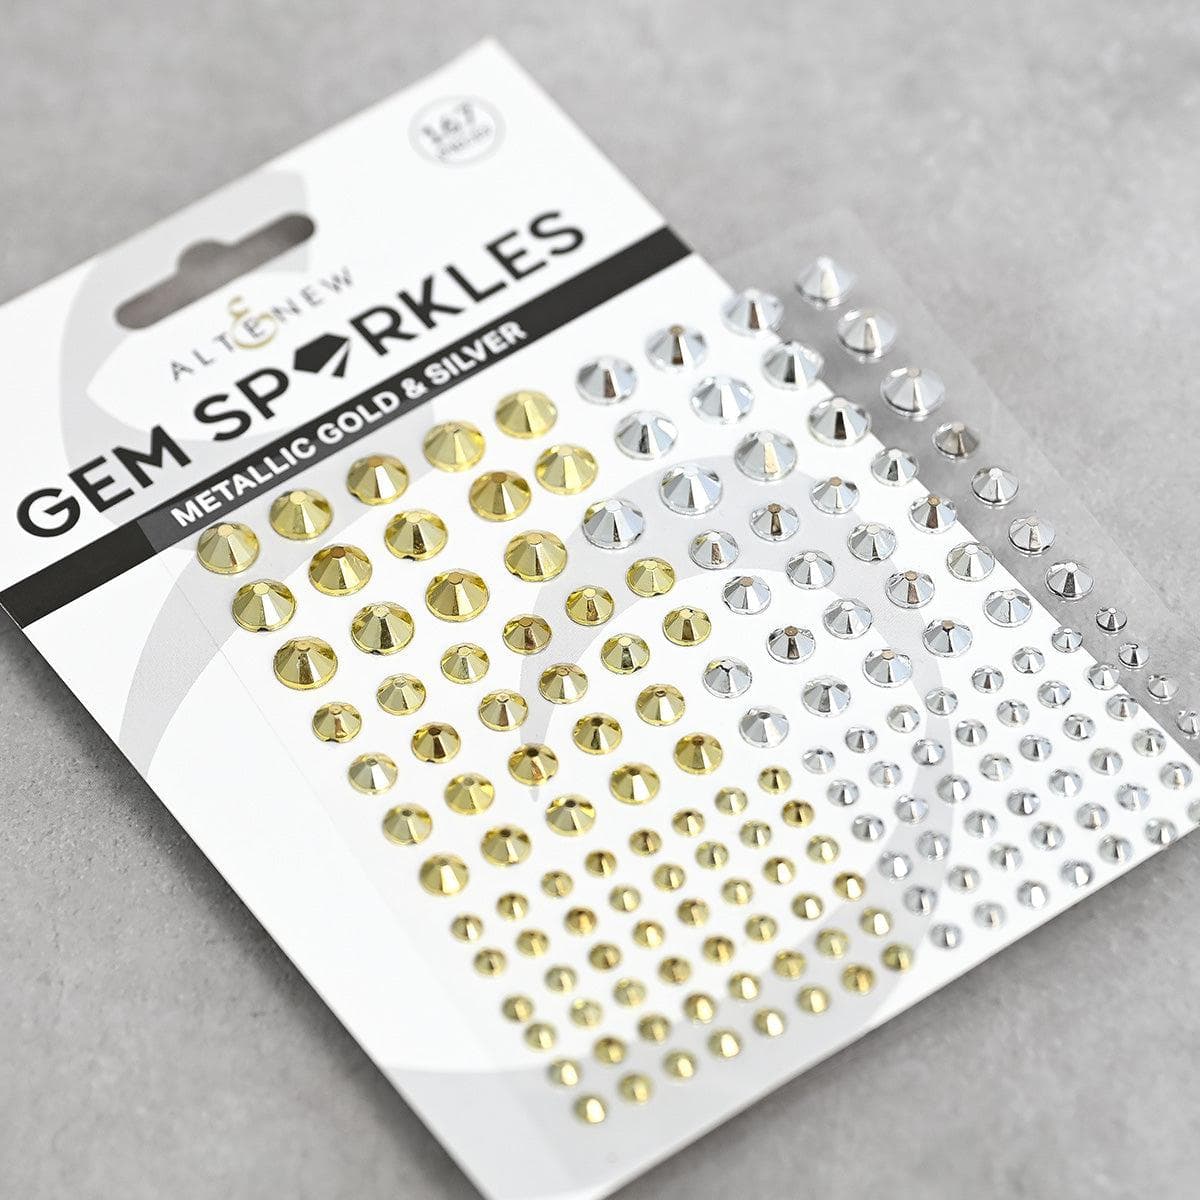 Glimmer & Shine Gem Sparkles Bundle